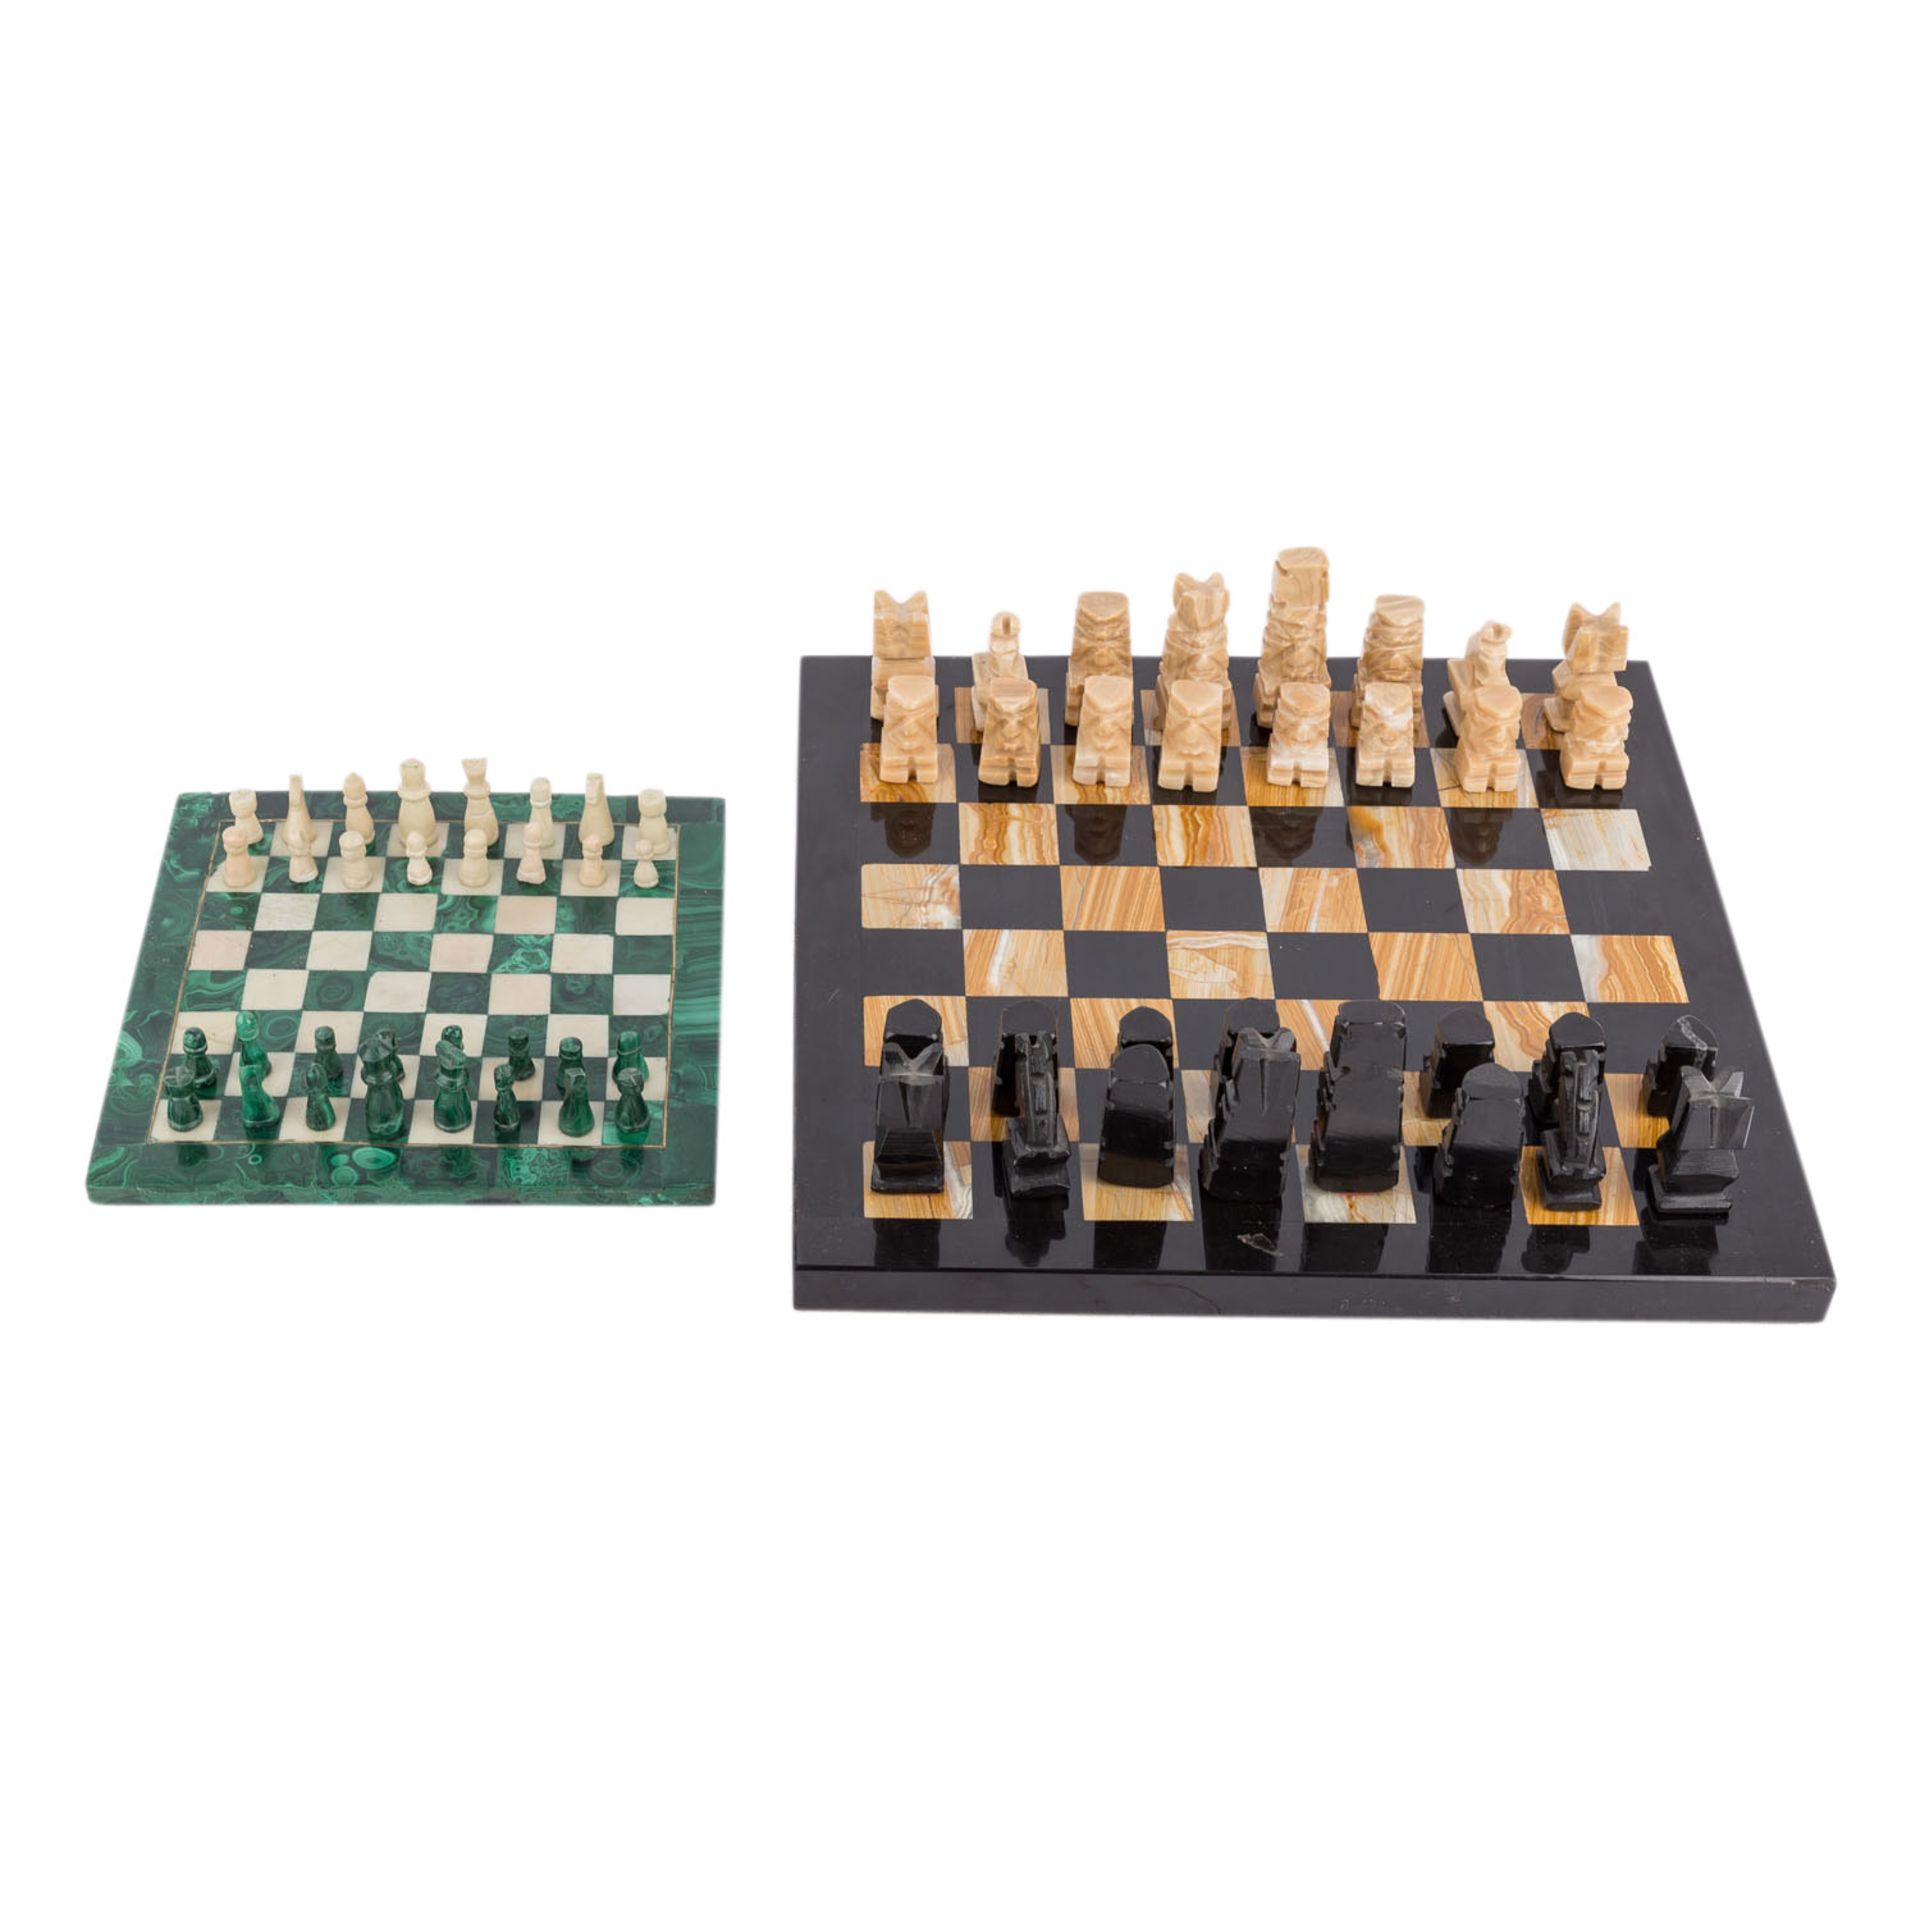 ZWEI STEINSCHACHSPIELESchweres Schachbrett aus Jaspis und Onyx, kleines Brett mit Malachitauflage, - Bild 3 aus 7